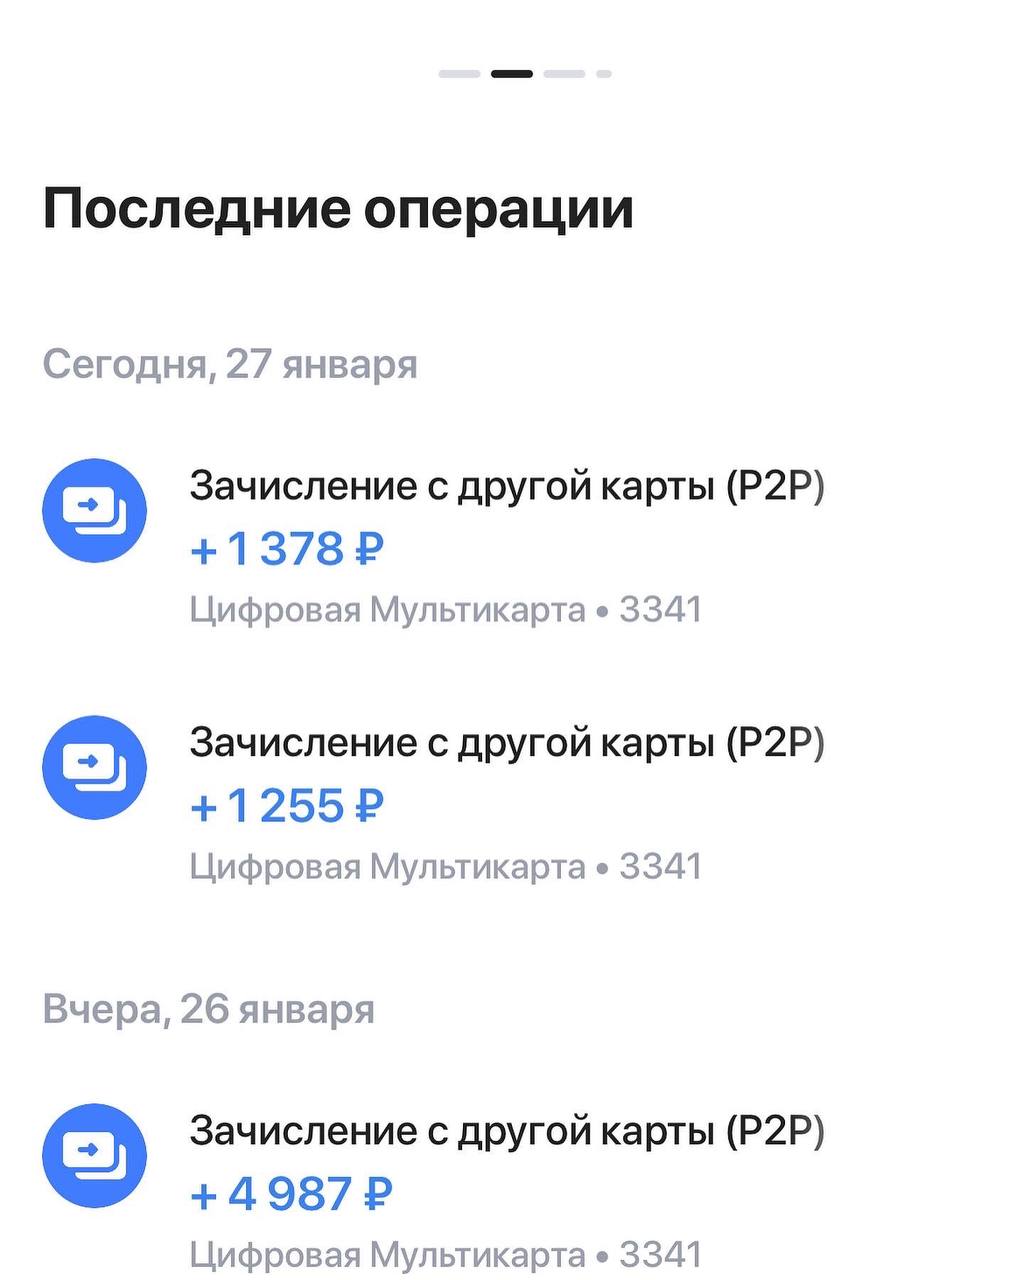 Телеграмм заработок без вложений на русском языке фото 107